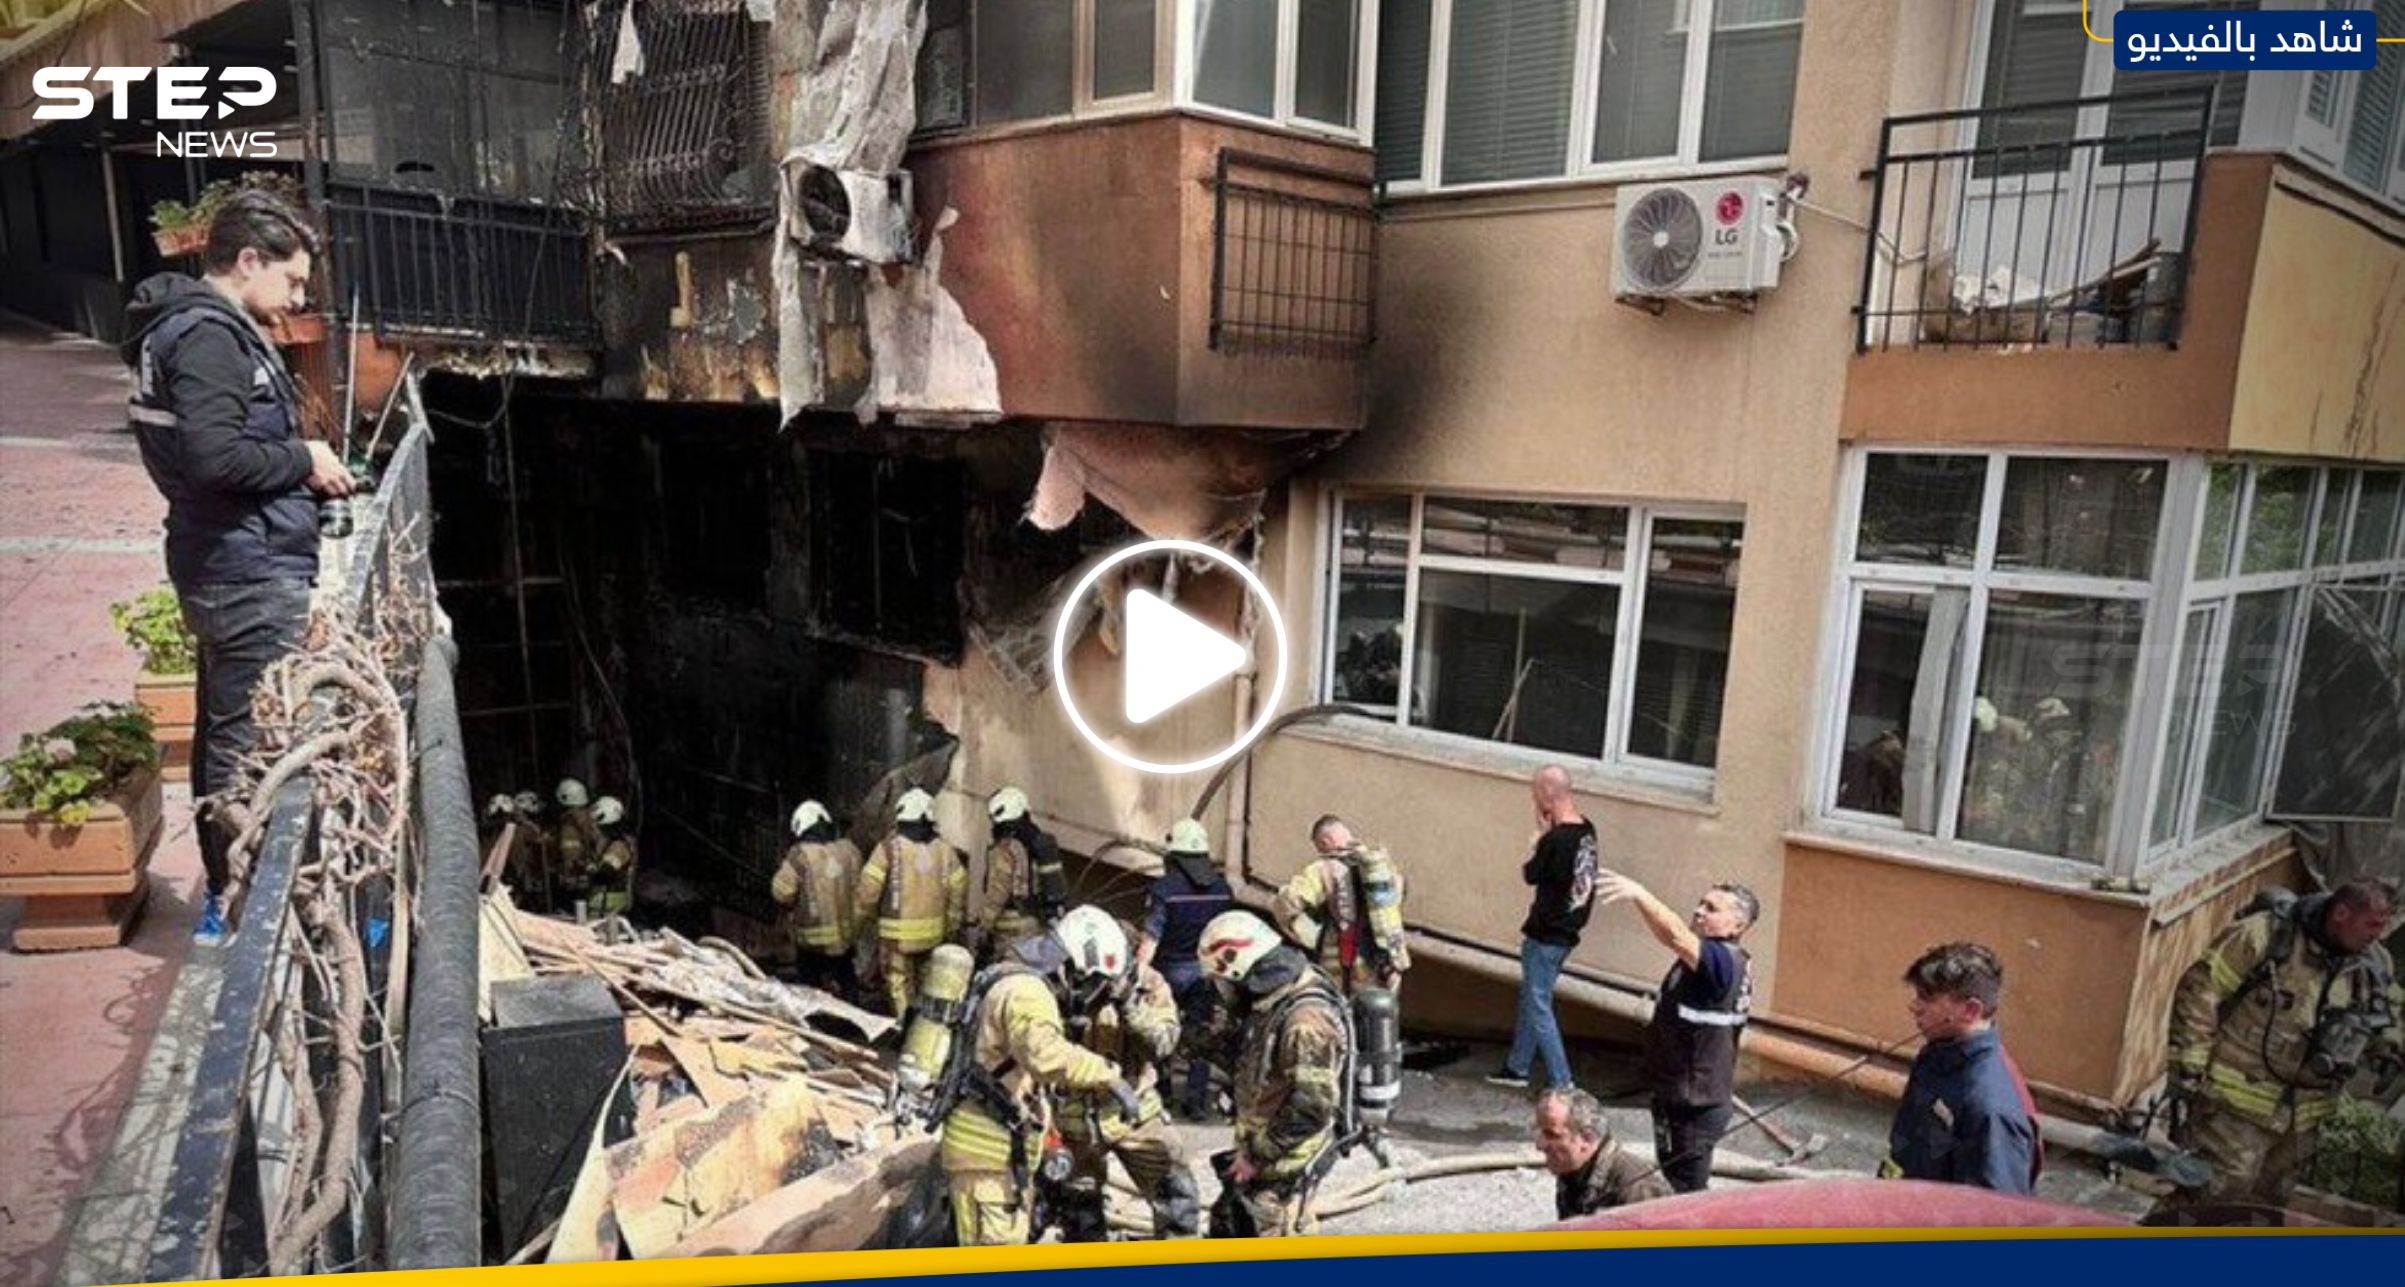 بالفيديو قتلى وجرحى إثر اندلاع حريق هائل في مبنى بإسطنبول